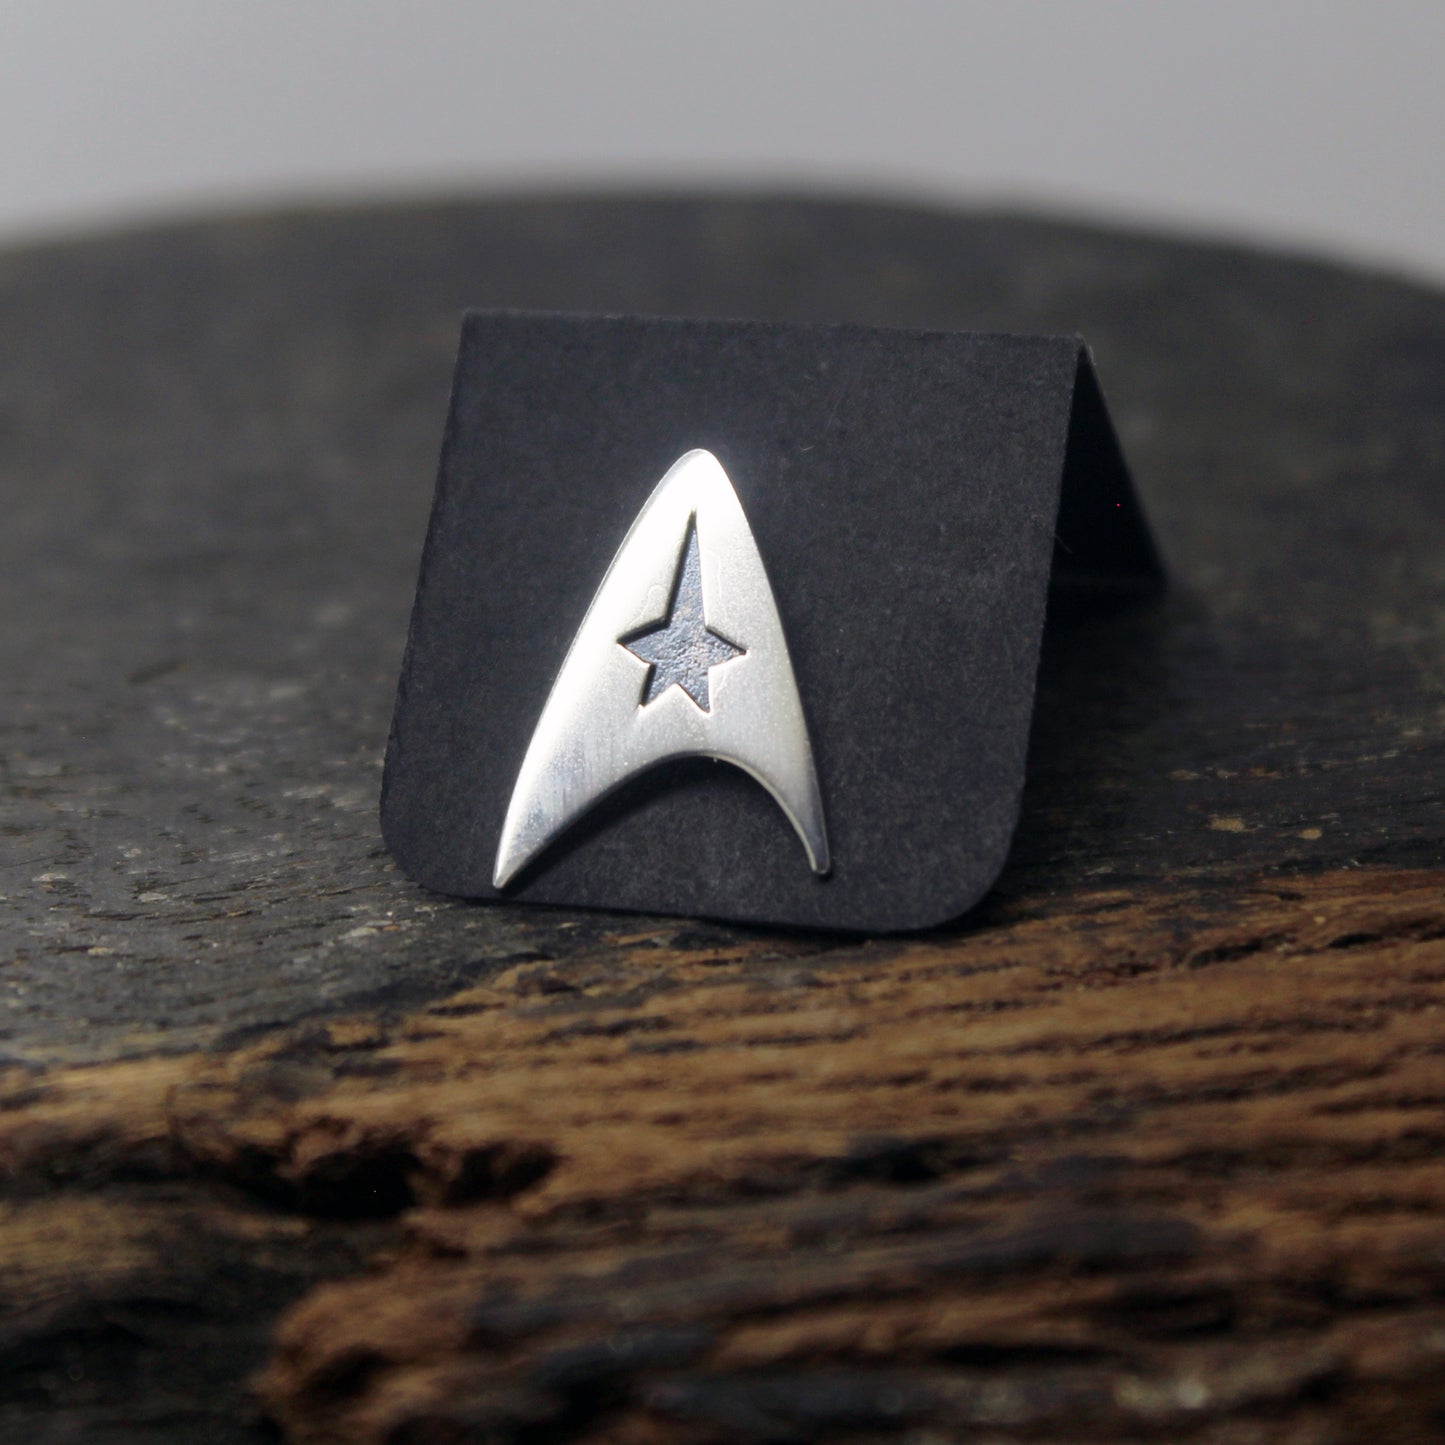 Star Trek Starfleet Delta Badge pin in 925 silver